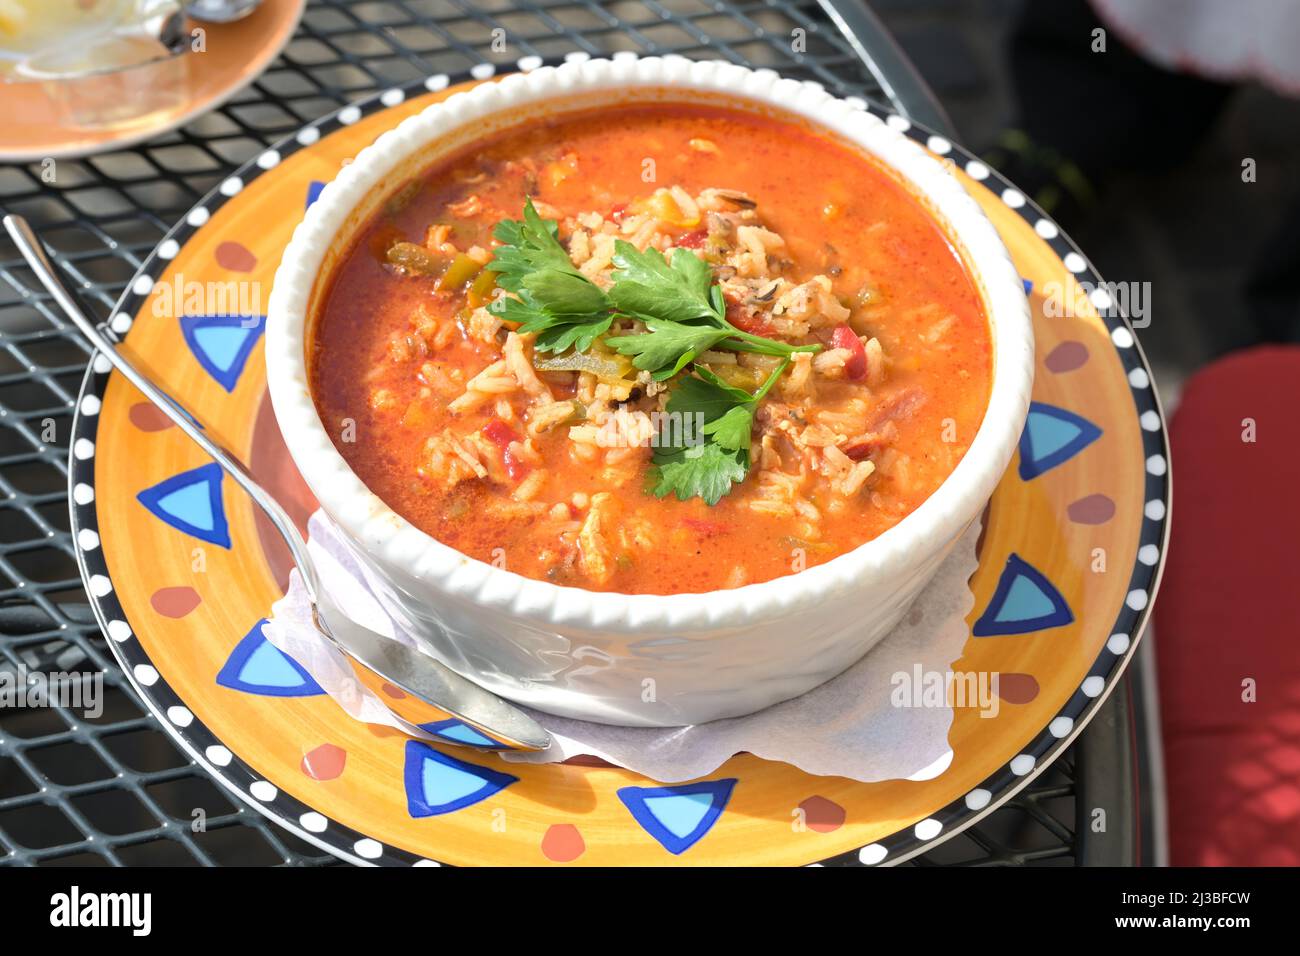 Ein-Topf-Jambalaya-Suppe mit Huhn, Garnelen, Wurst, Gemüse und Reis, kreolisches Gericht in einer Schüssel auf einem bunten Teller, ausgewählter Fokus Stockfoto